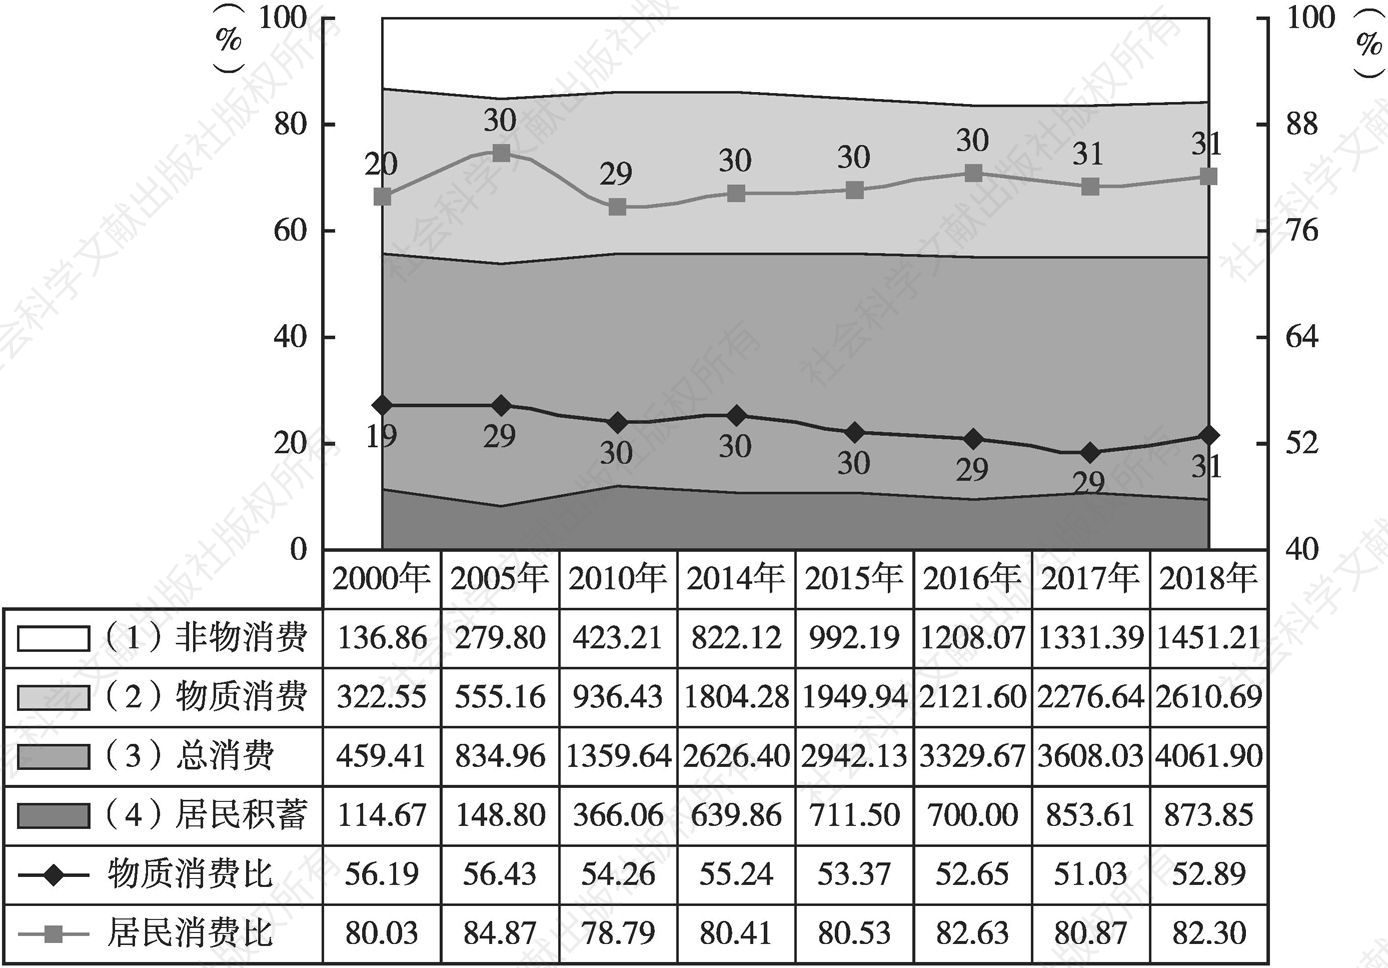 图1 甘肃城乡主要民生数据增长变化基本情况